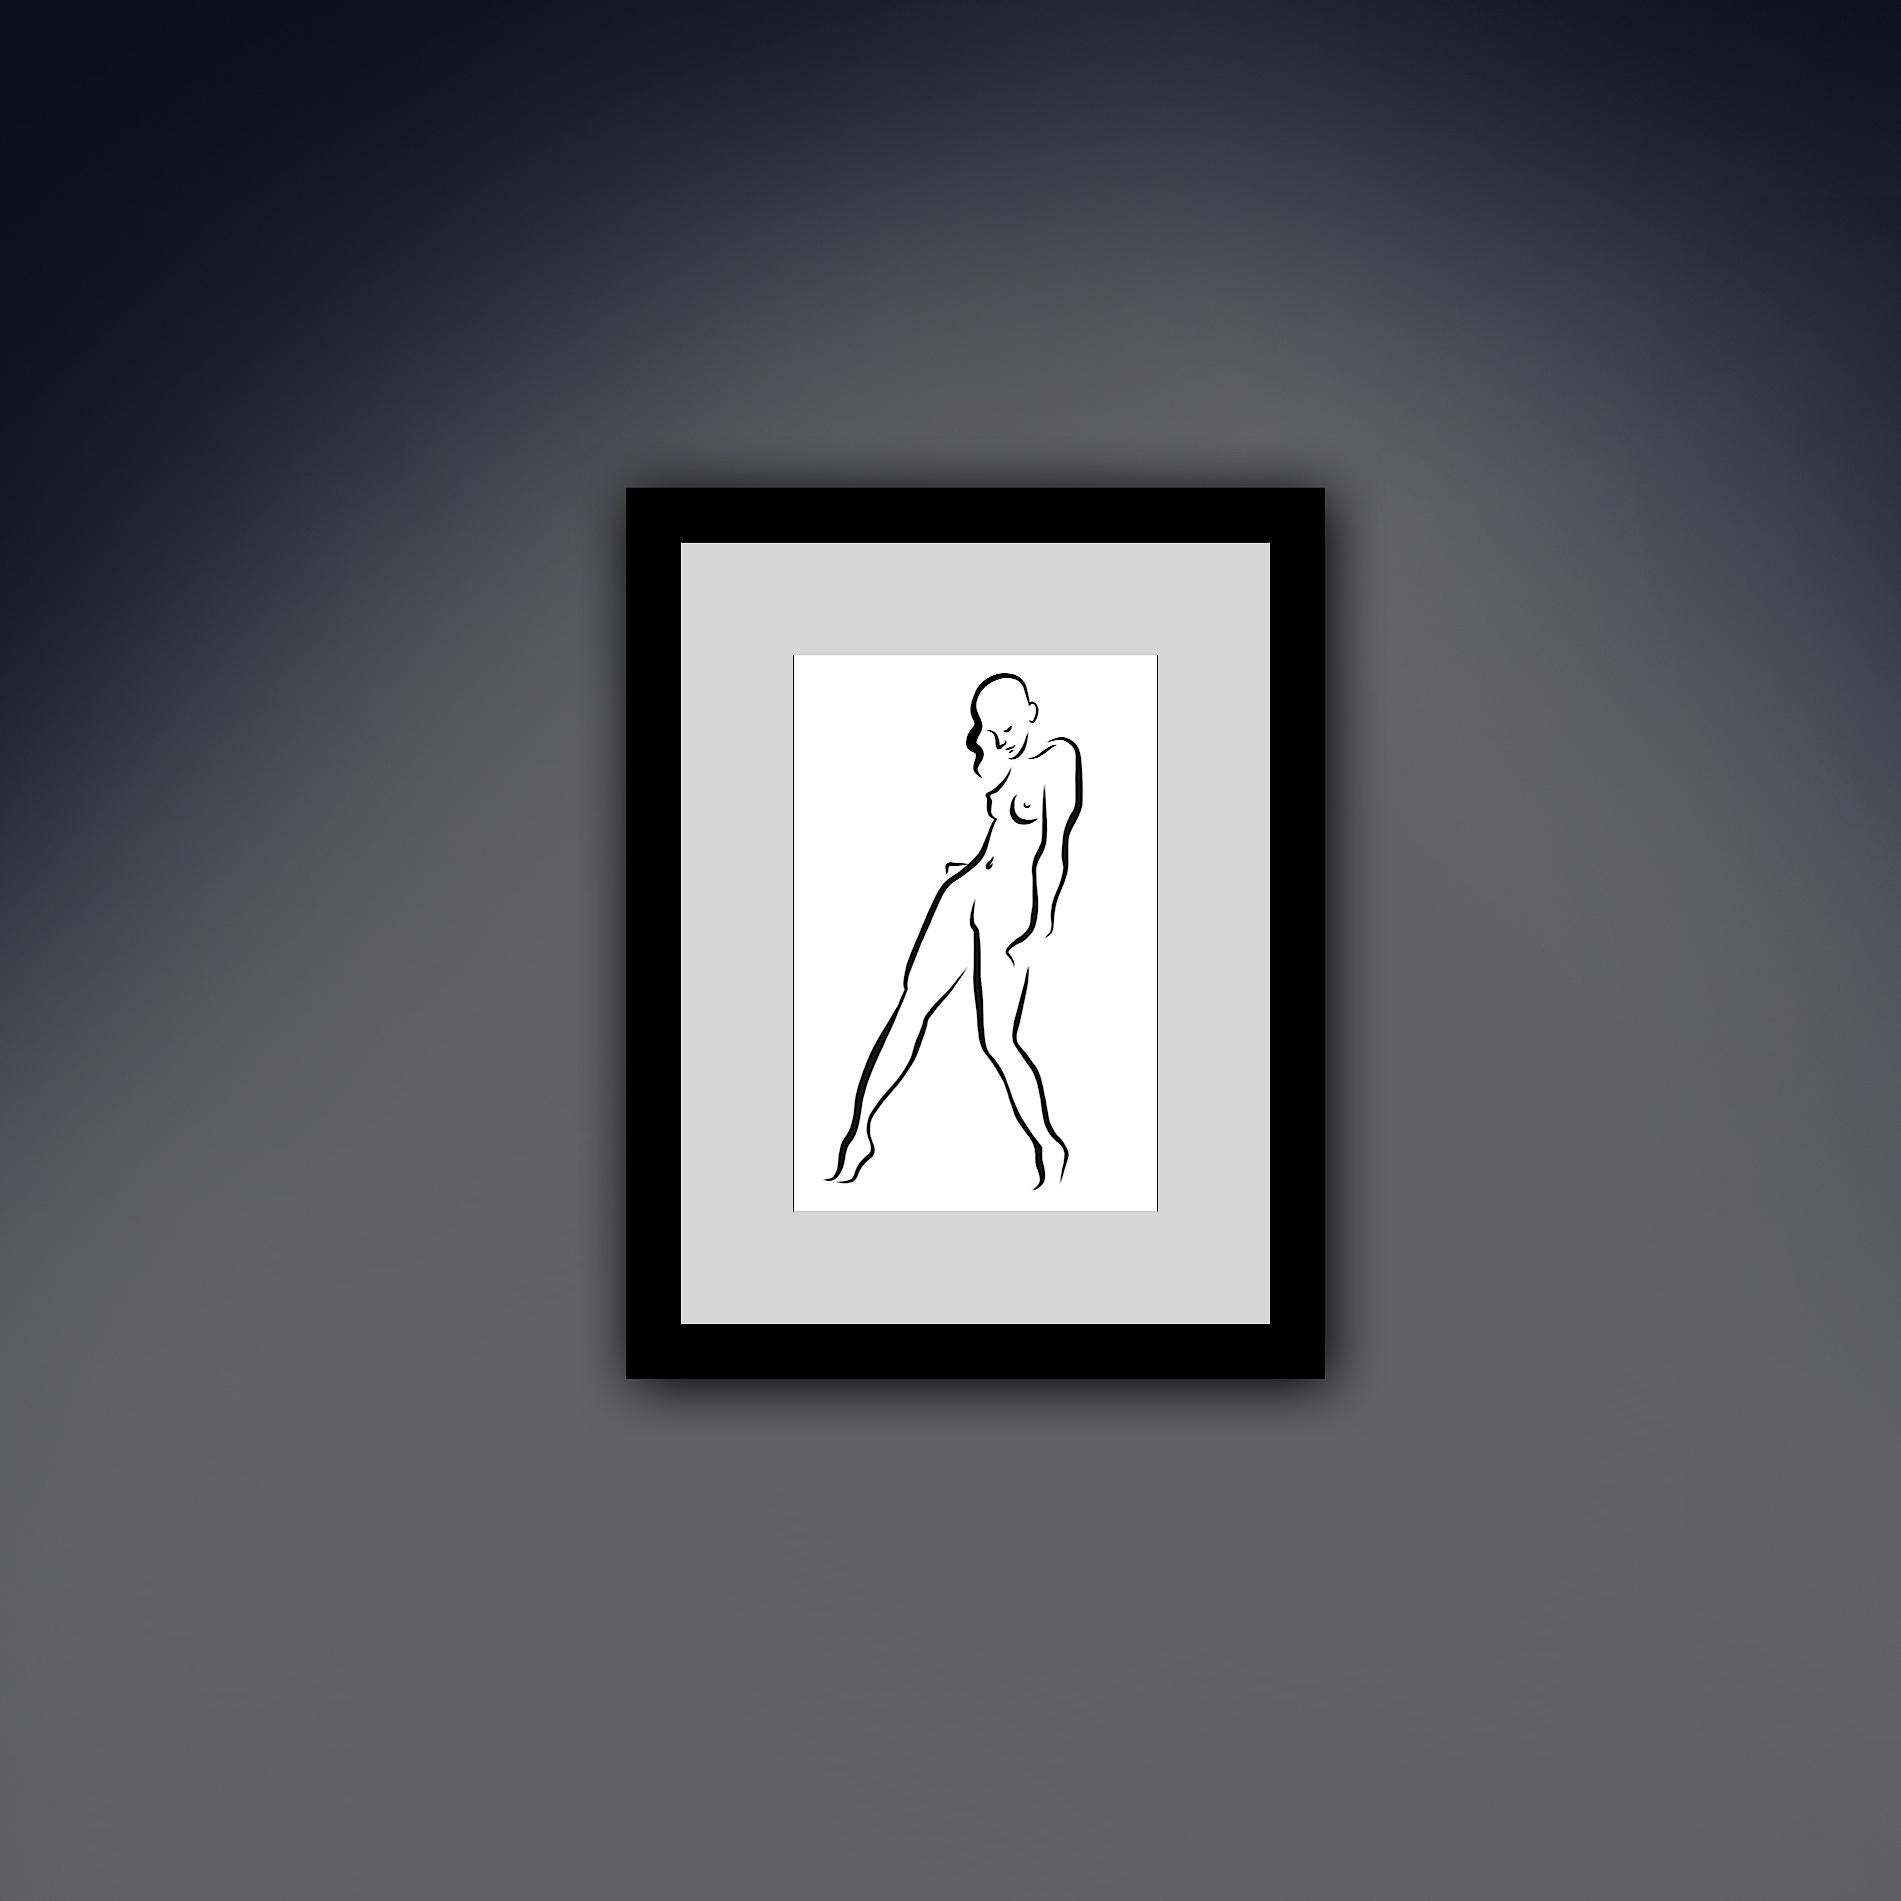 Haiku n° 23, 2/50 - Dessin numérique représentant une femme nue debout  - Contemporain Print par Michael Binkley